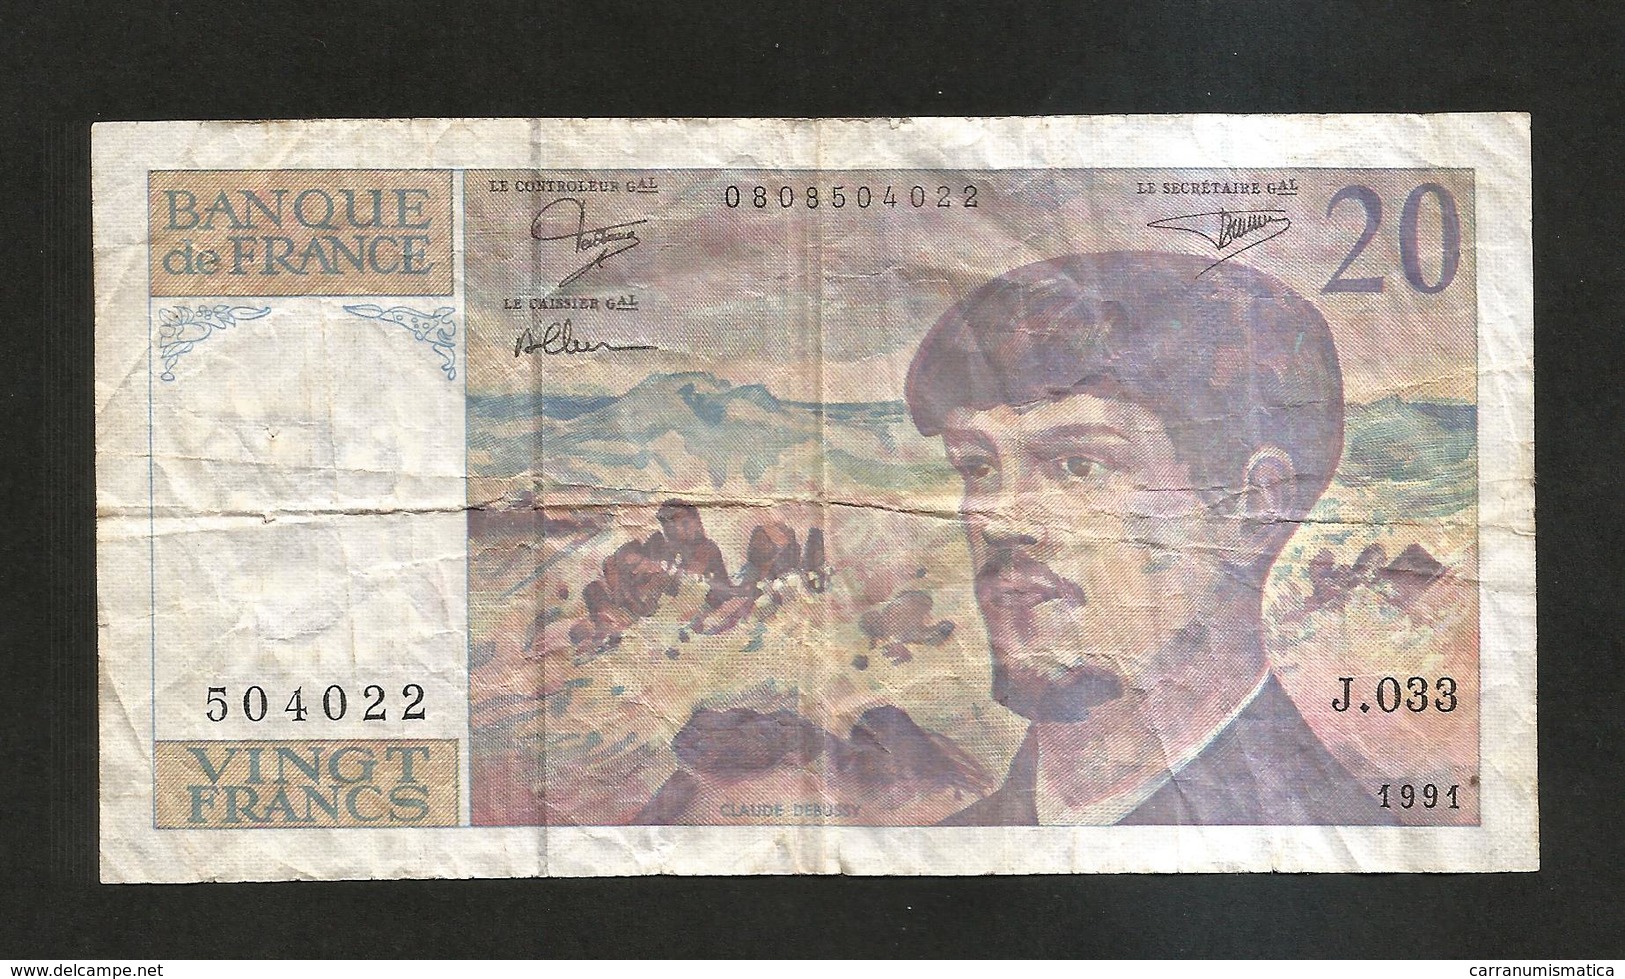 20 Francs 1997 VF+ France P 151 i